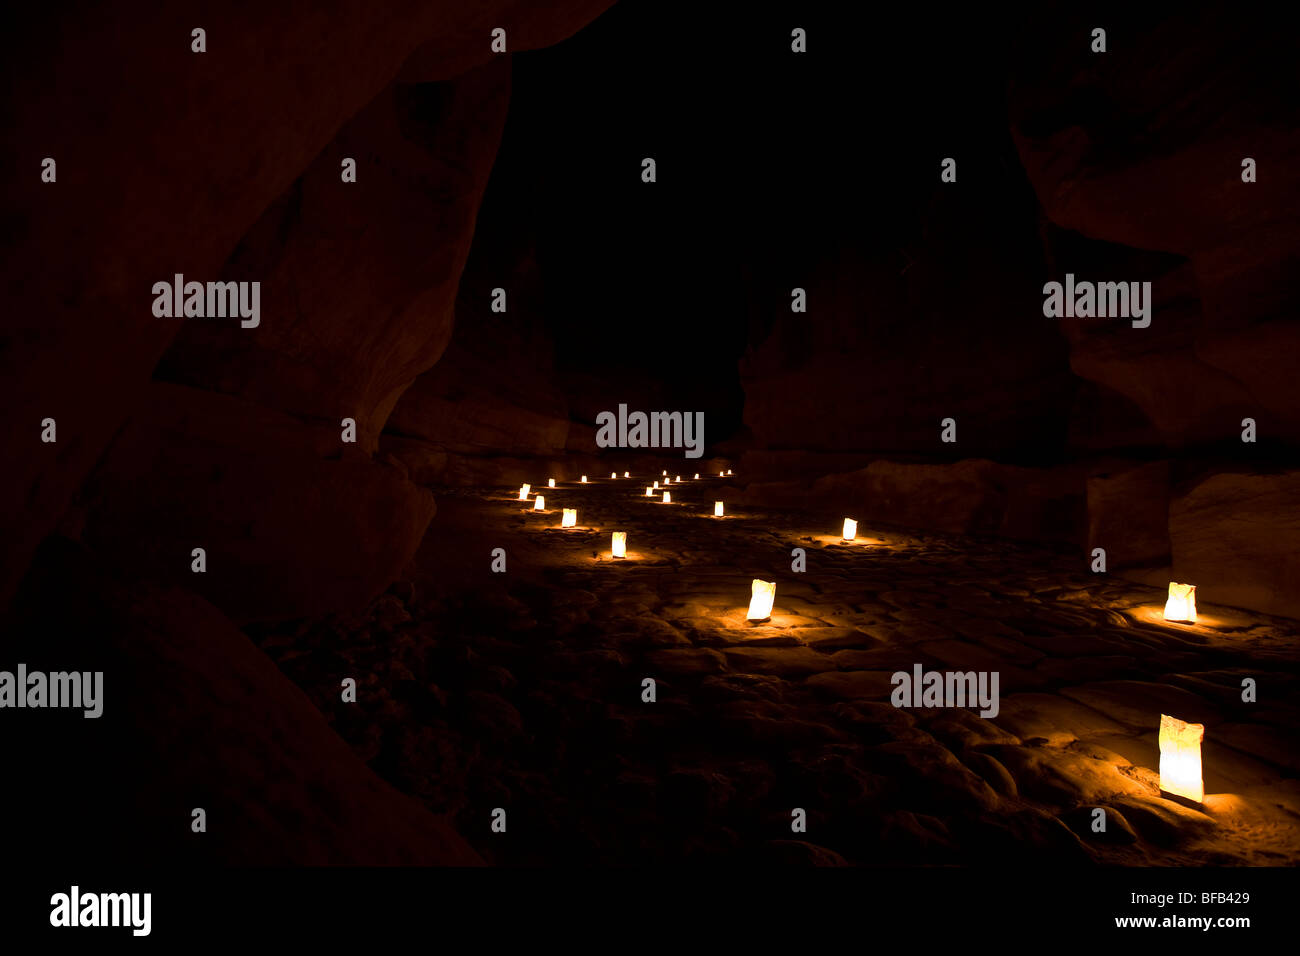 The Siq leading to the Treasury at Petra by night, Jordan Stock Photo